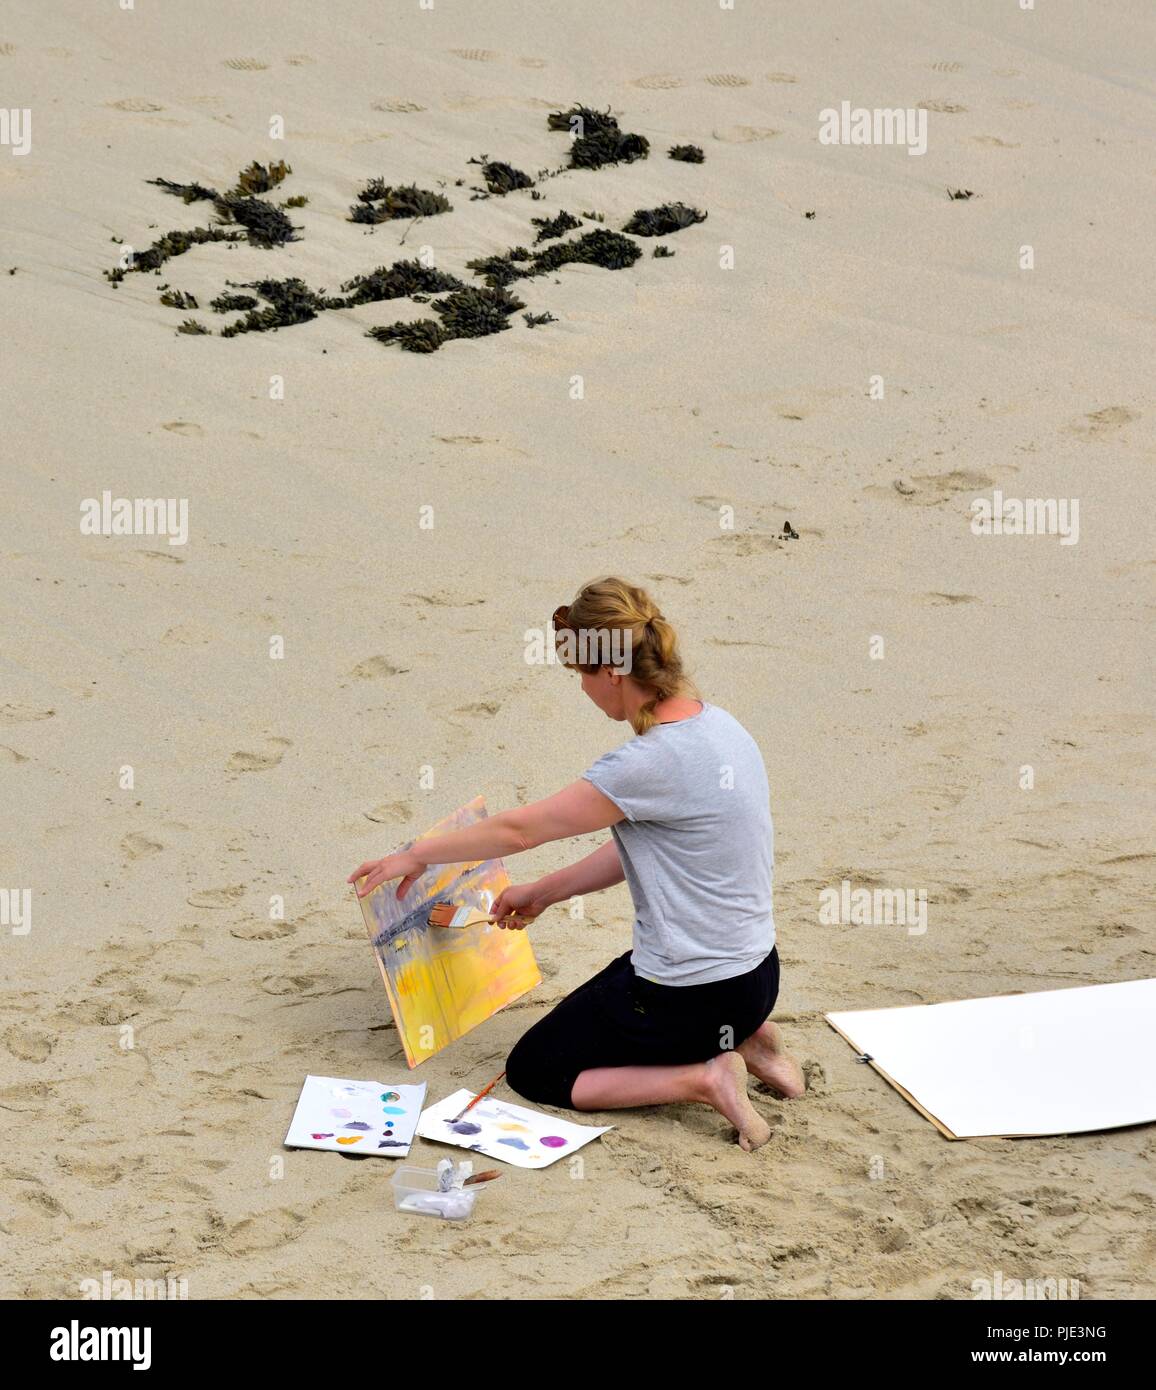 Une femme peinture sur une plage, l'anse de Sennen, Cornwall, Angleterre, Royaume-Uni Banque D'Images